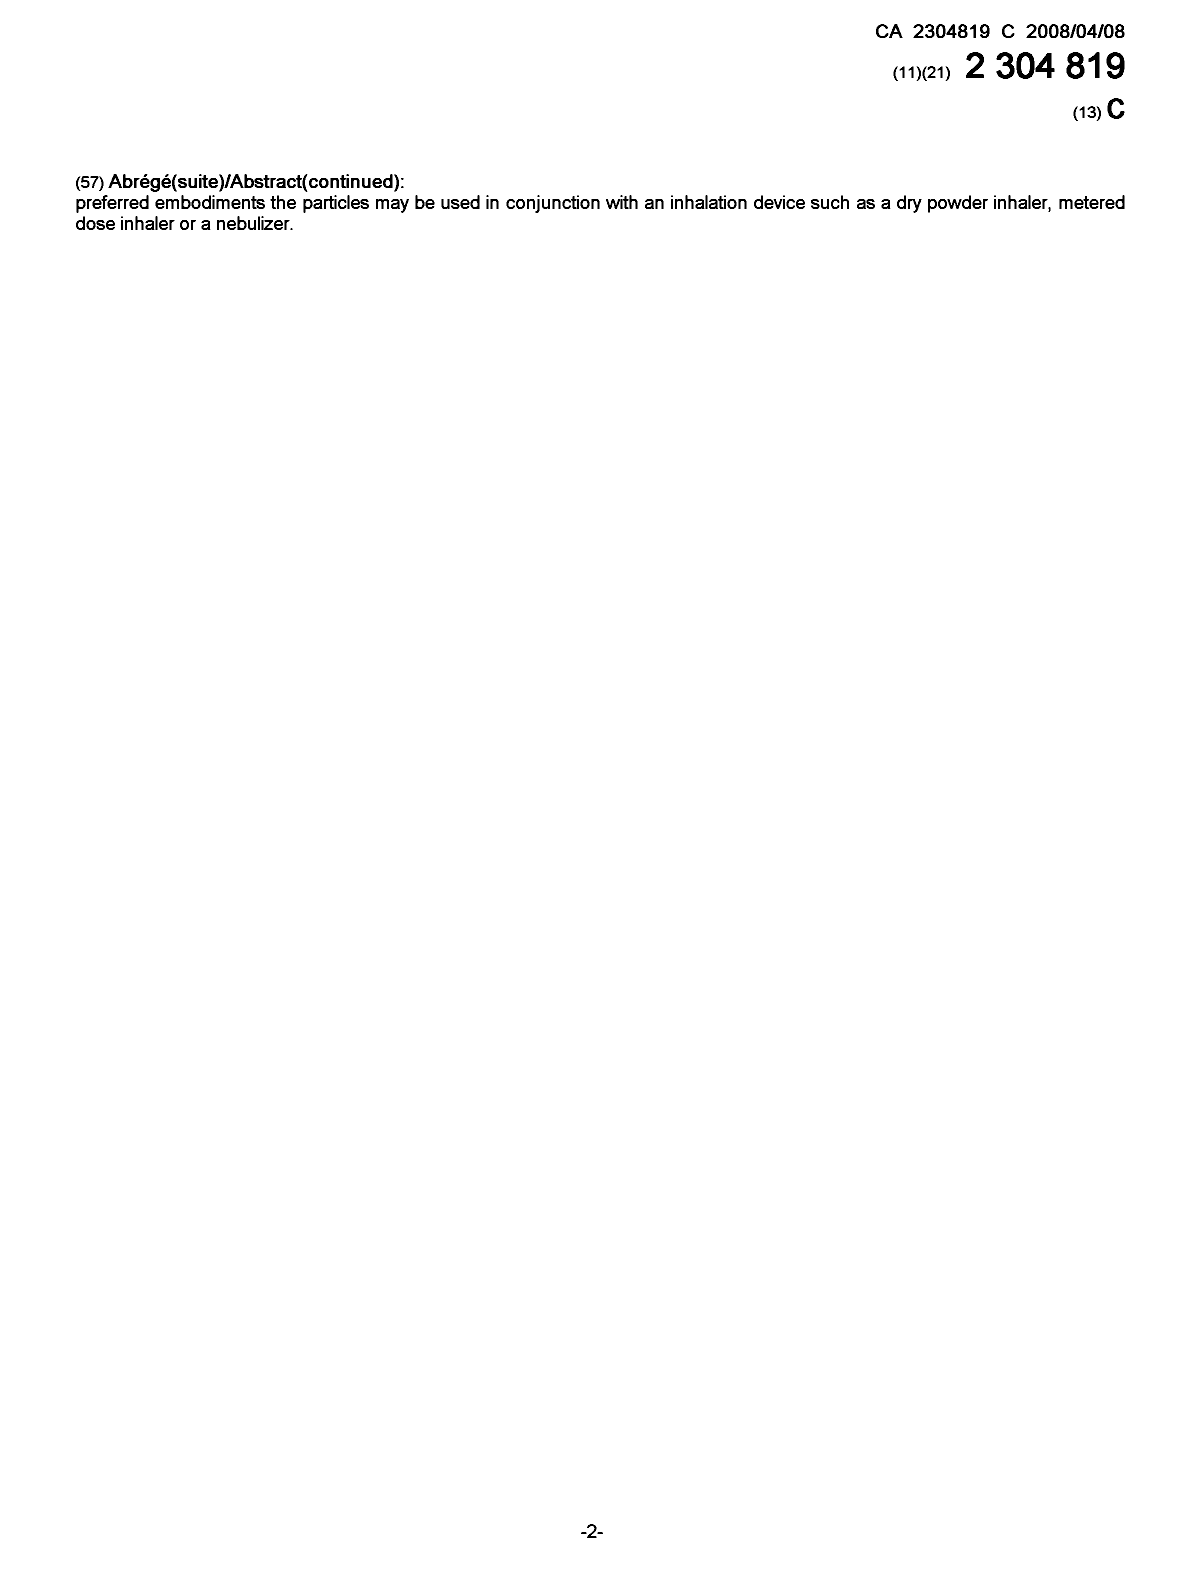 Document de brevet canadien 2304819. Page couverture 20071206. Image 2 de 2